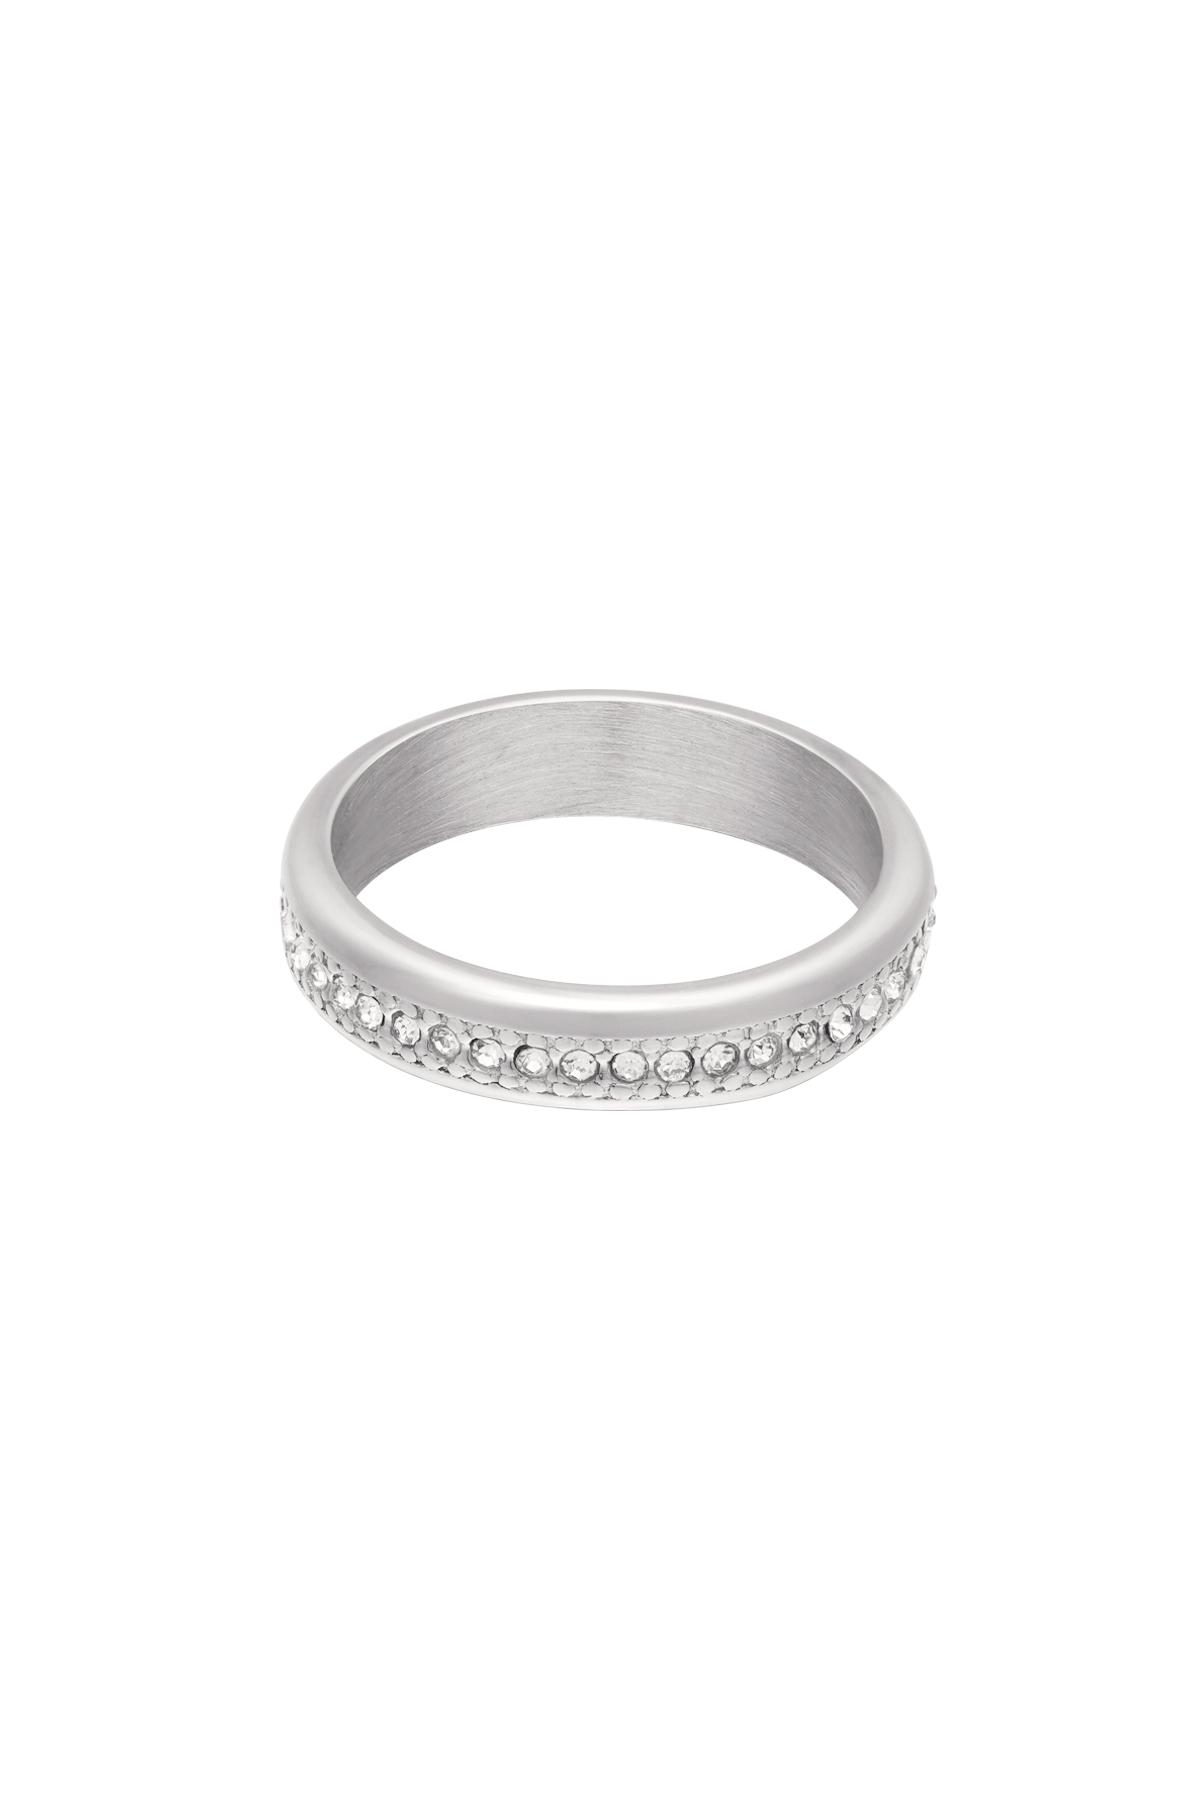 RVS ring met kleine zirkonia steentjes Zilver Stainless Steel 17